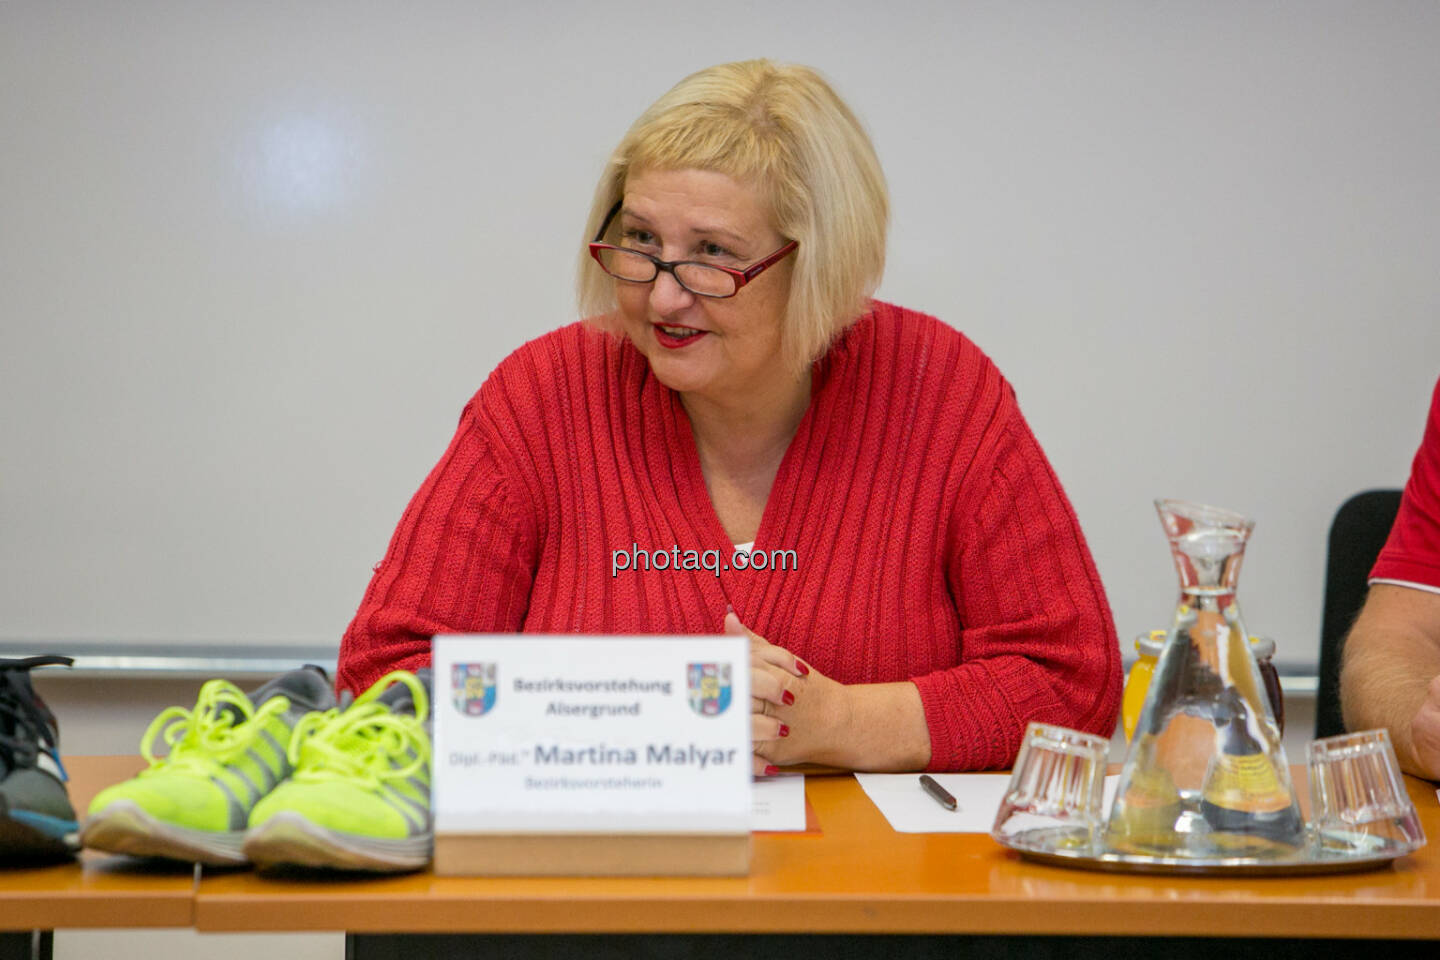 Martina Malyar (Bezirksvorsteherin Alsergrund)